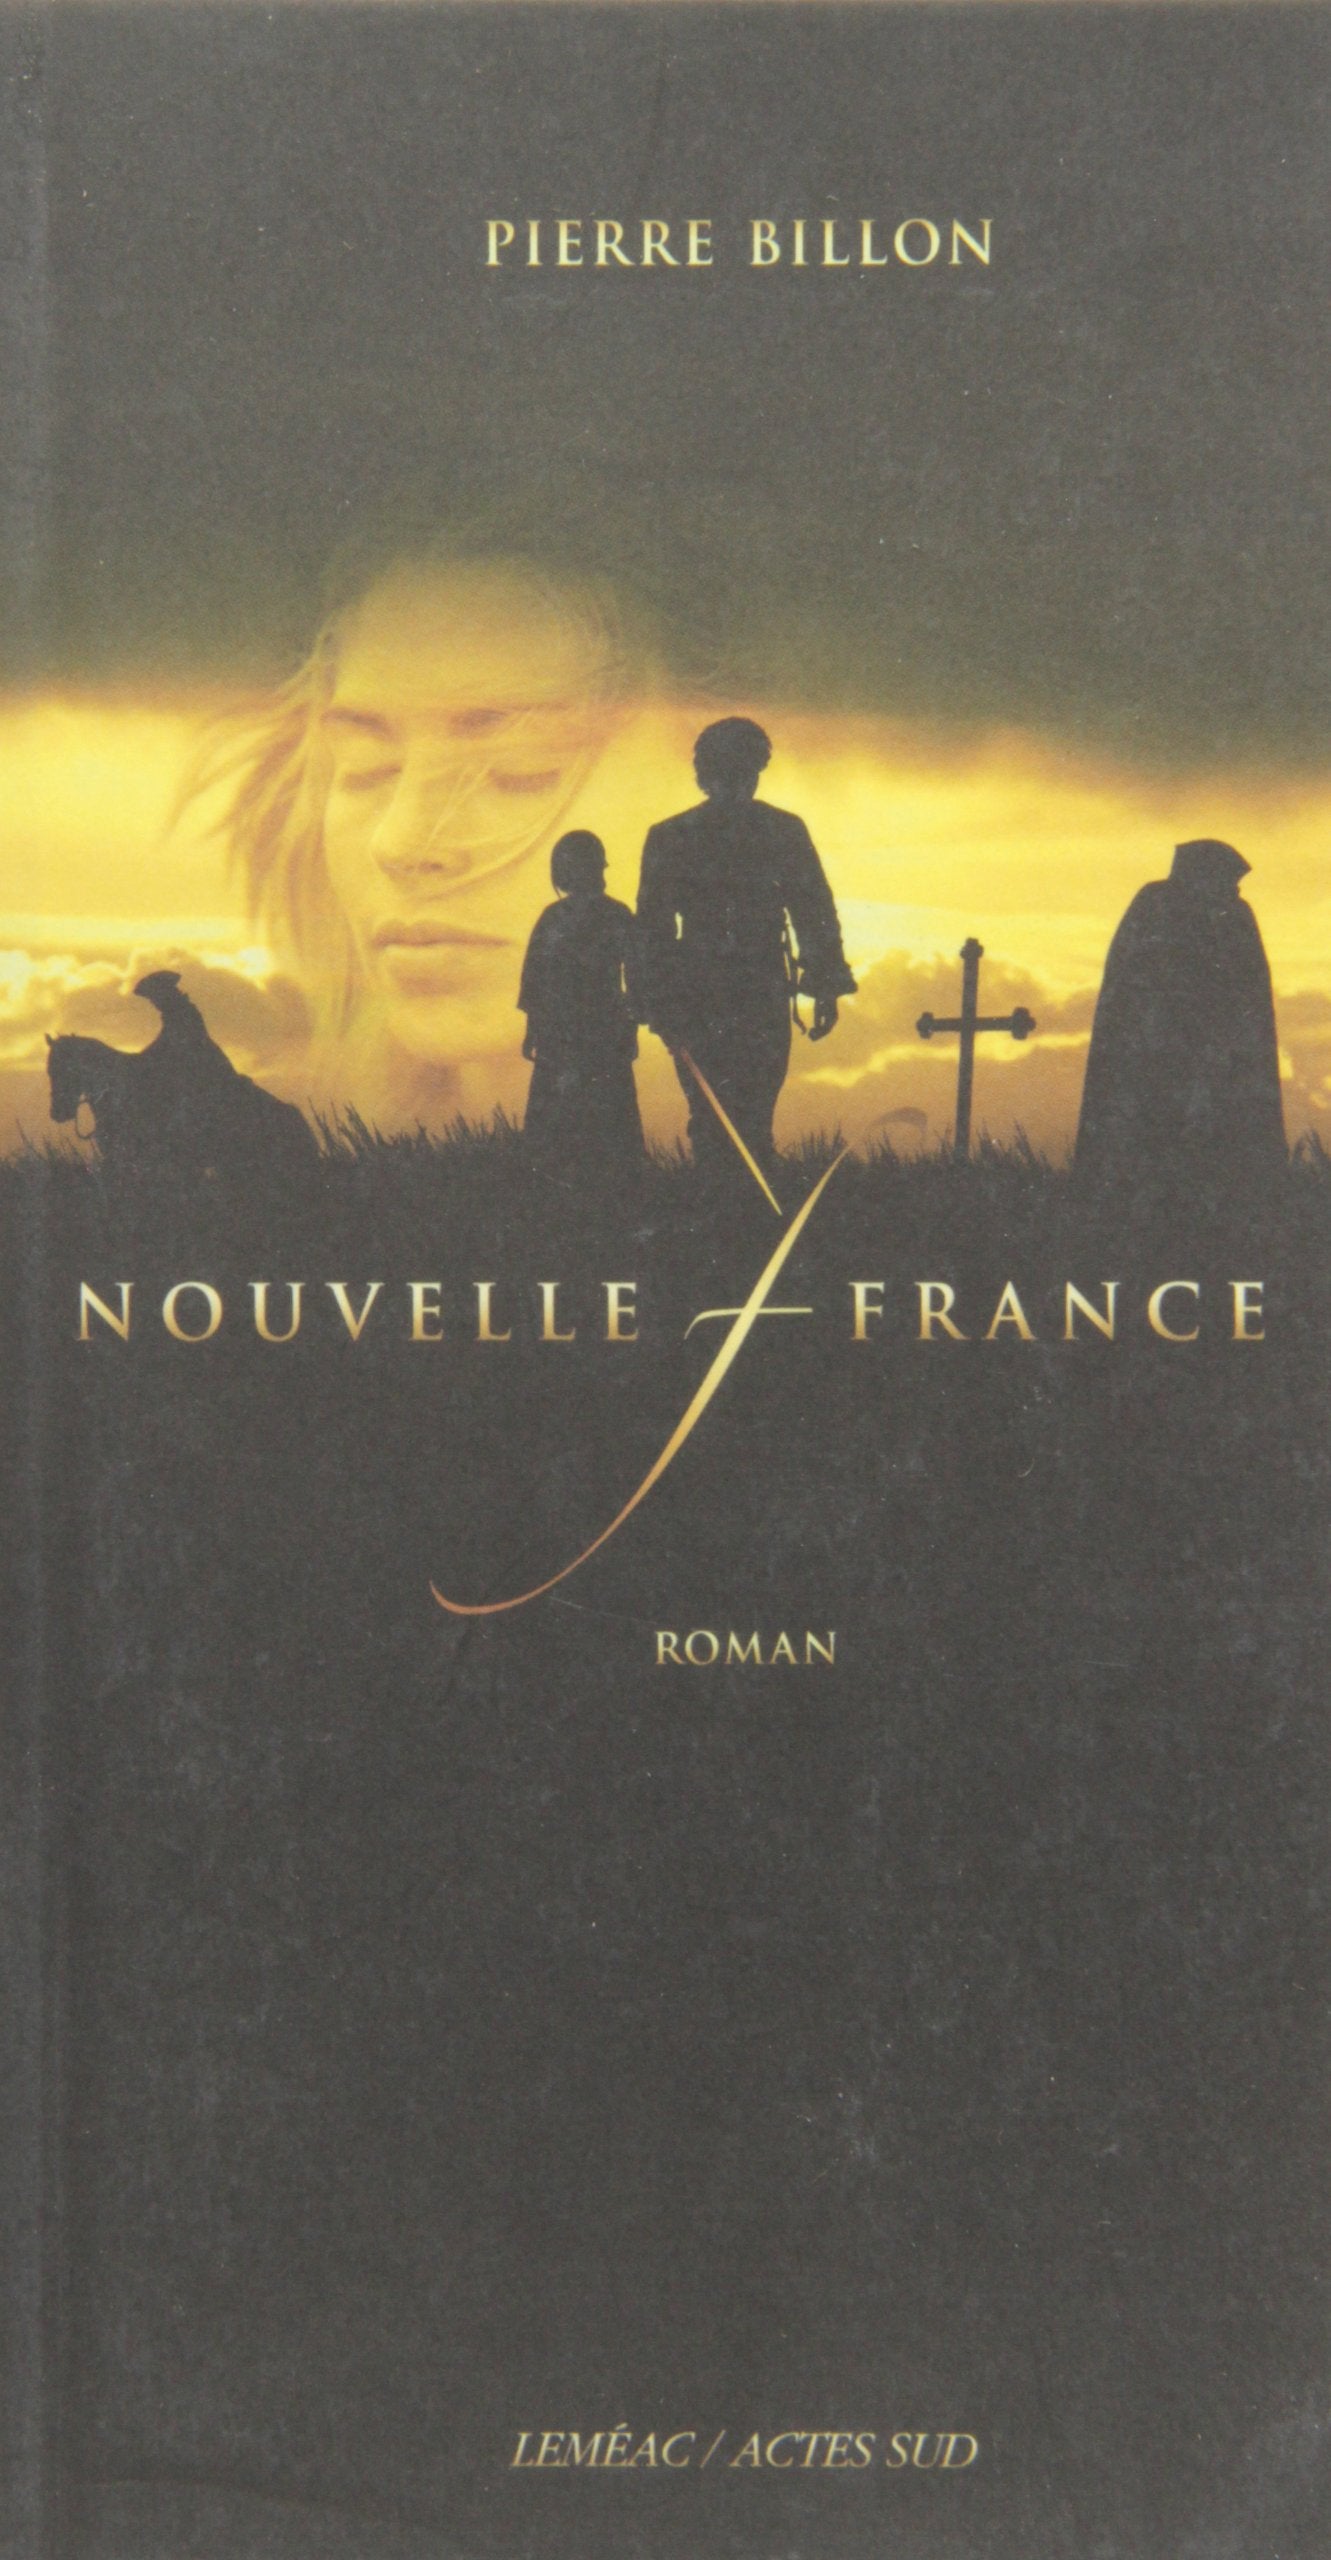 Livre ISBN 2742753419 Nouvelle-France (Pierre Billon)